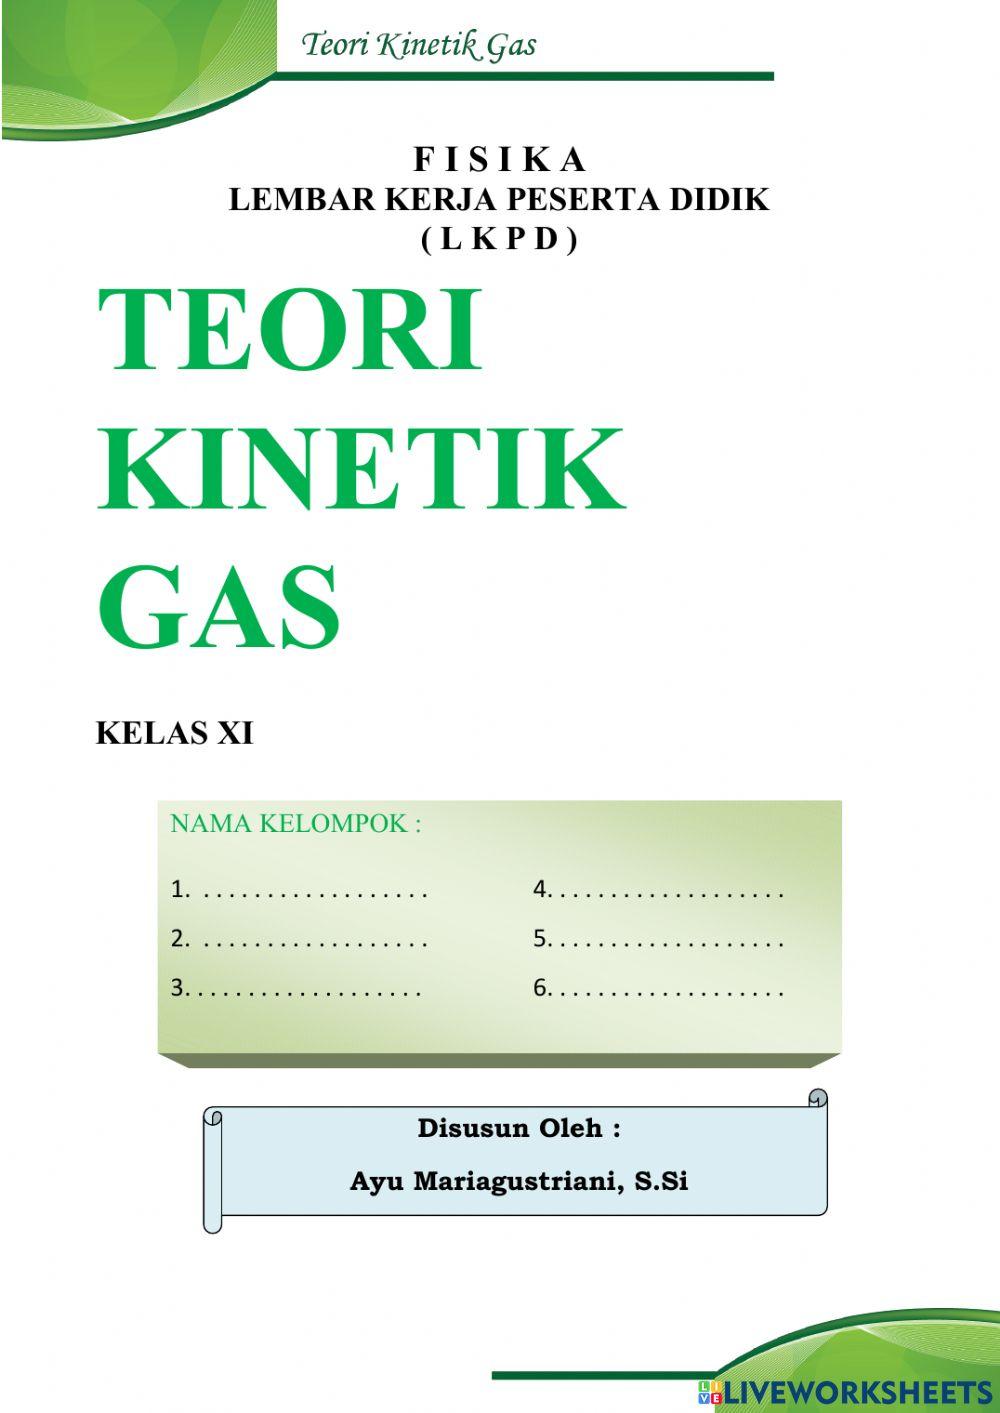 LKPD Teori Kinetik Gas PHET SIMULATION